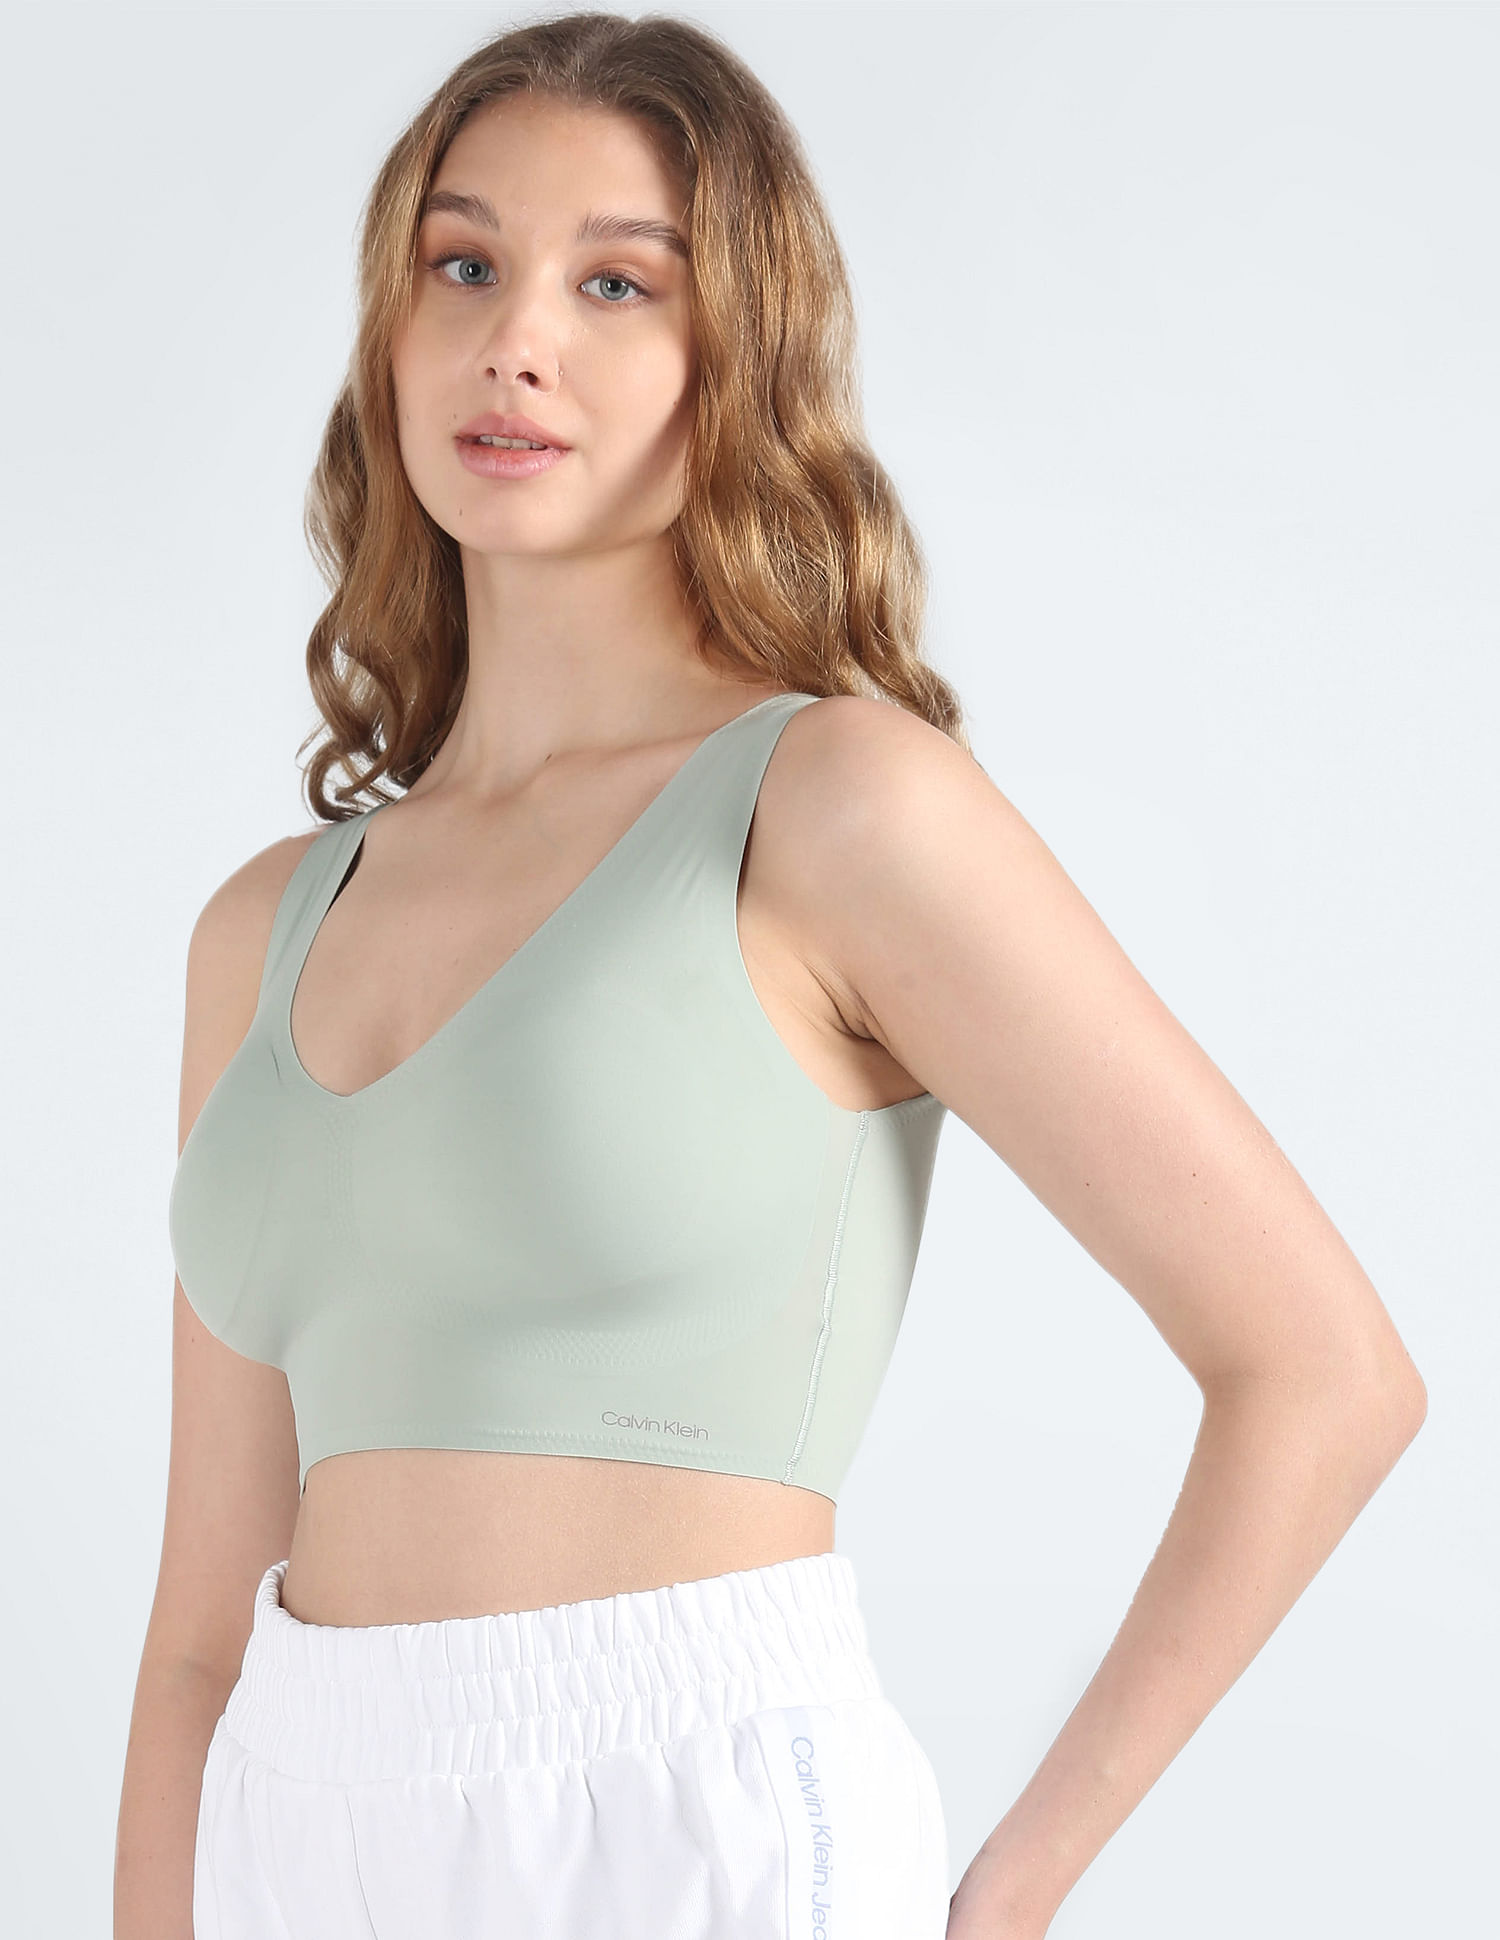 Buy Calvin Klein Underwear from Online Shop in India - NNNOW